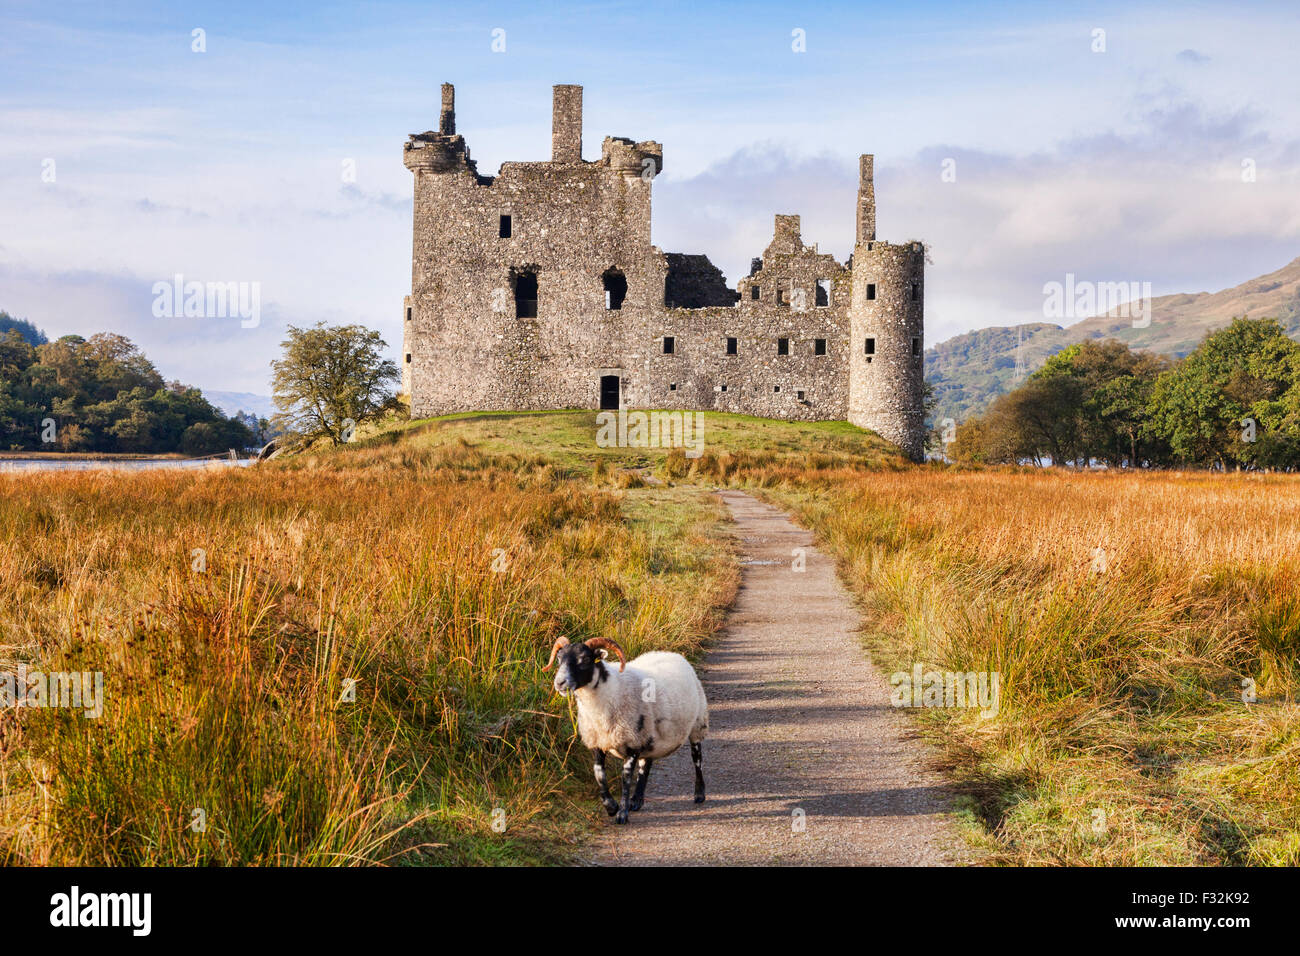 Le Château de Kilchurn, le chemin qui mène à elle et d'un ram, Blackface écossais Loch Awe, Argyll and Bute, Ecosse, Royaume-Uni. Banque D'Images